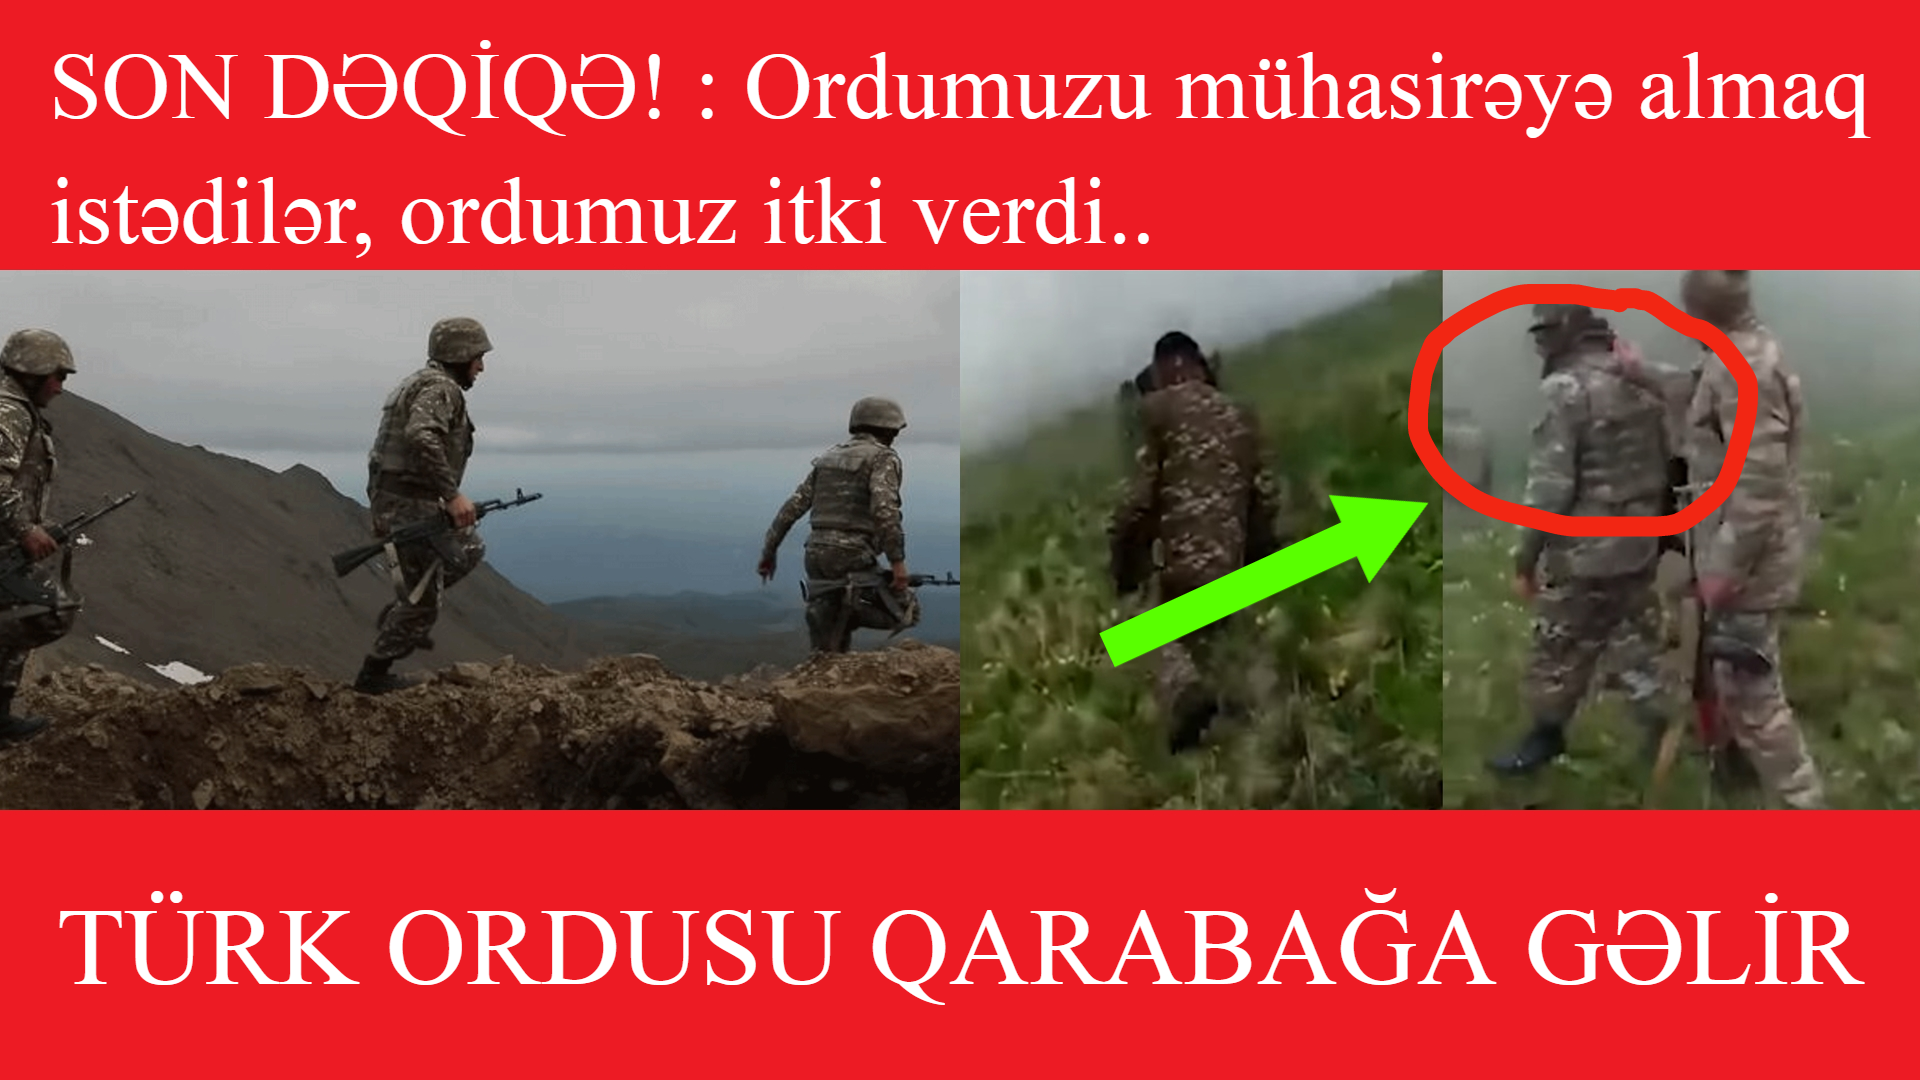 SON DƏQİQƏ! : Ordumuzu mühasirəyə almaq istədilər..